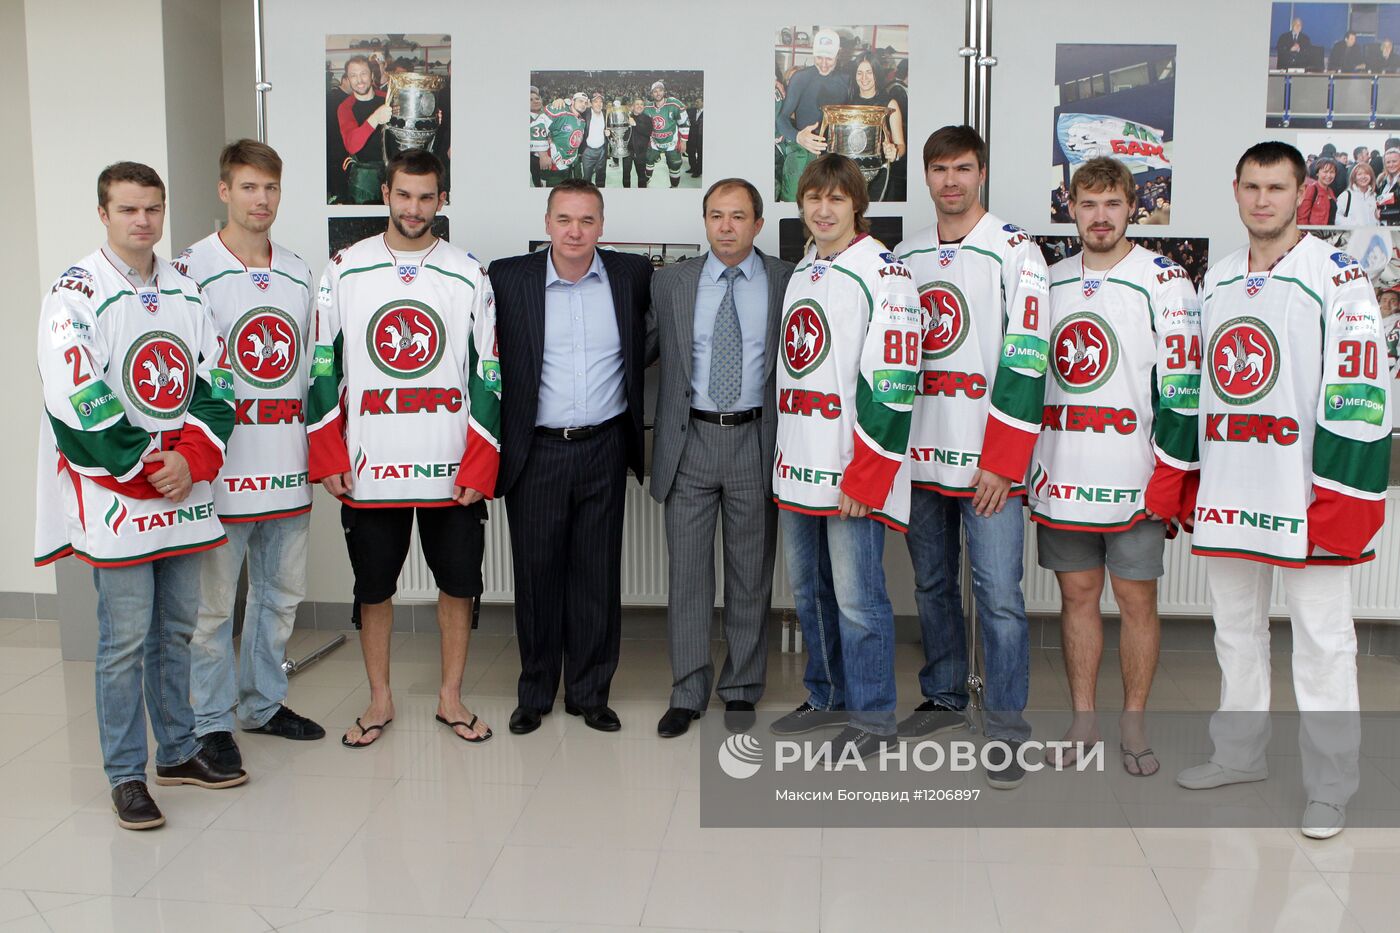 Представление новых игроков хоккейного клуба "Ак Барс"